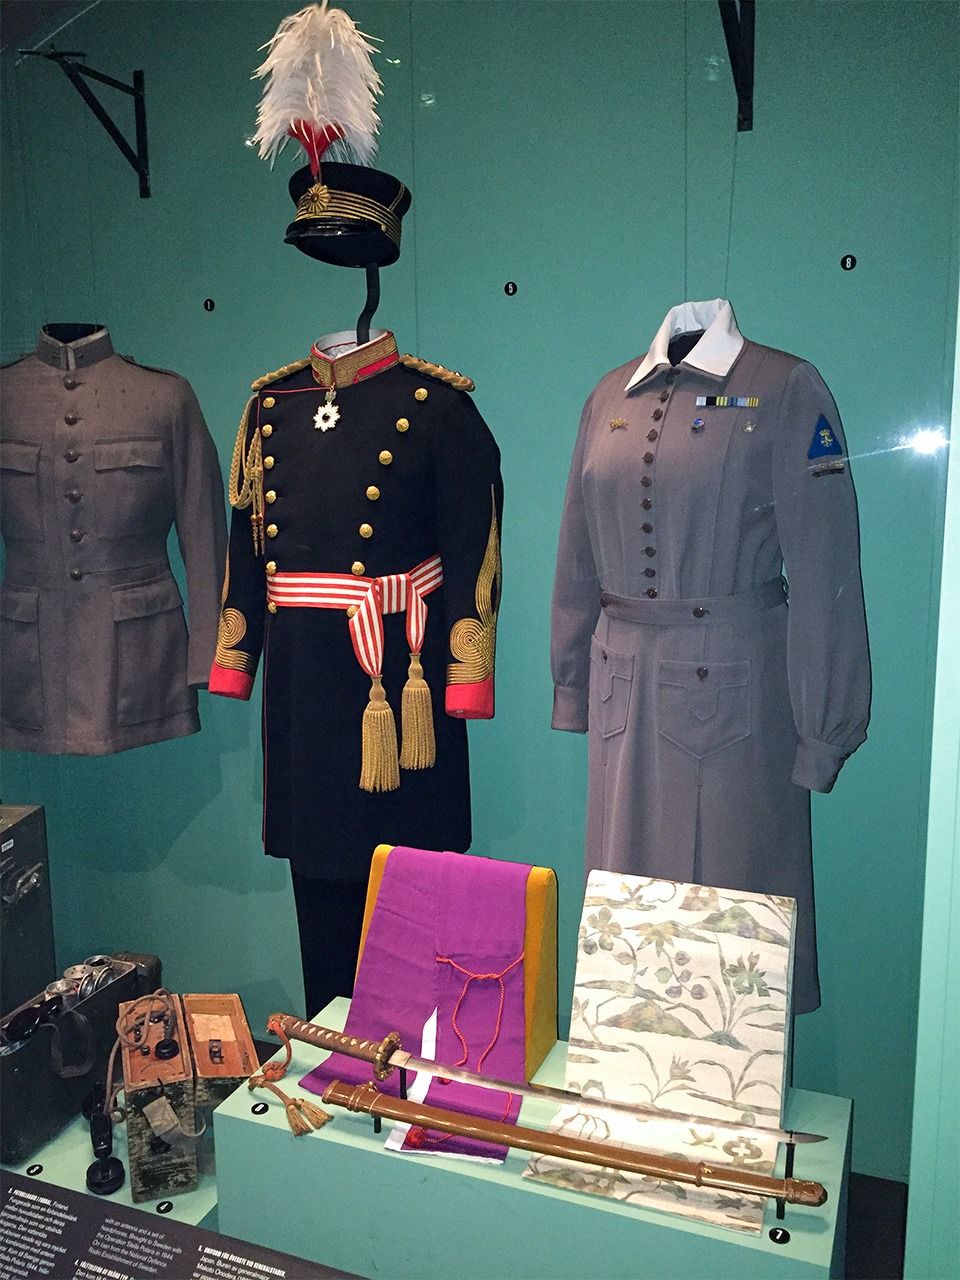 小野寺夫妇捐赠的军服、军刀和百合子夫人的和服腰带（为隐藏密码表，外出时随身携带），现收藏于瑞典军事博物馆，笔者摄影